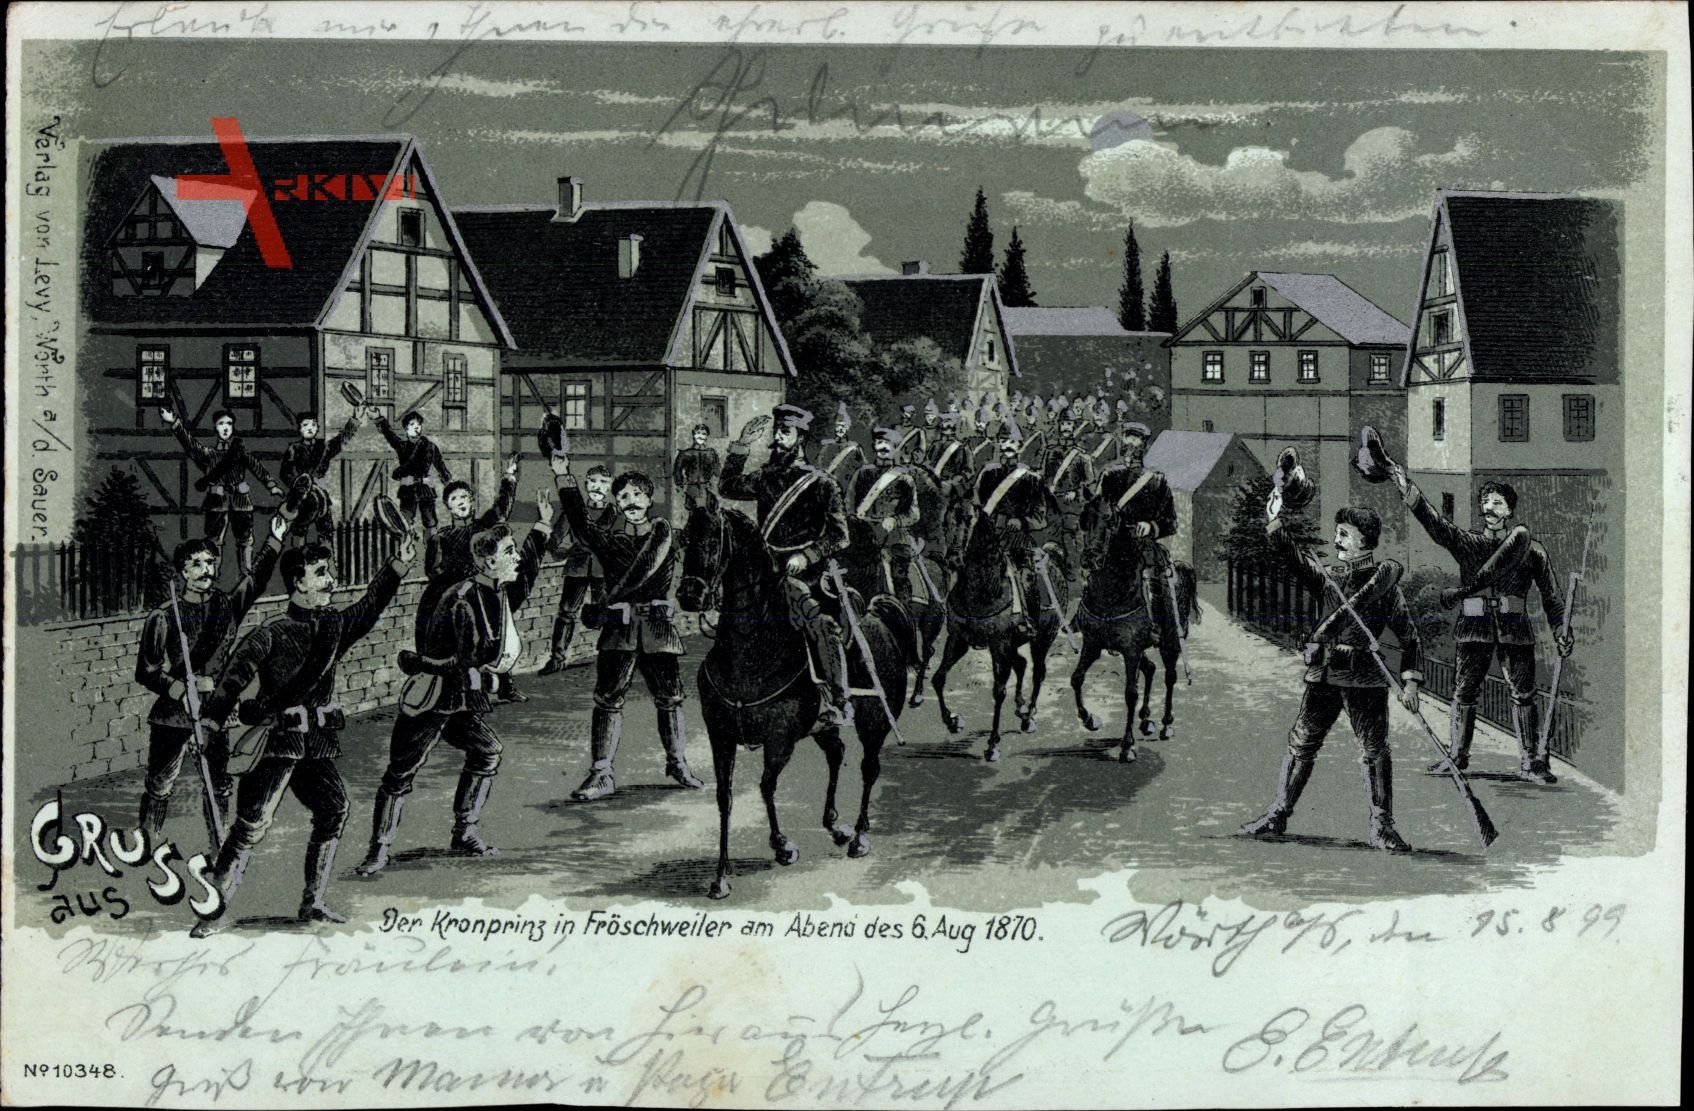 Mondschein Fröschweiler Bas Rhin, Der Kronprinz am Abend des 6. Aug. 1870